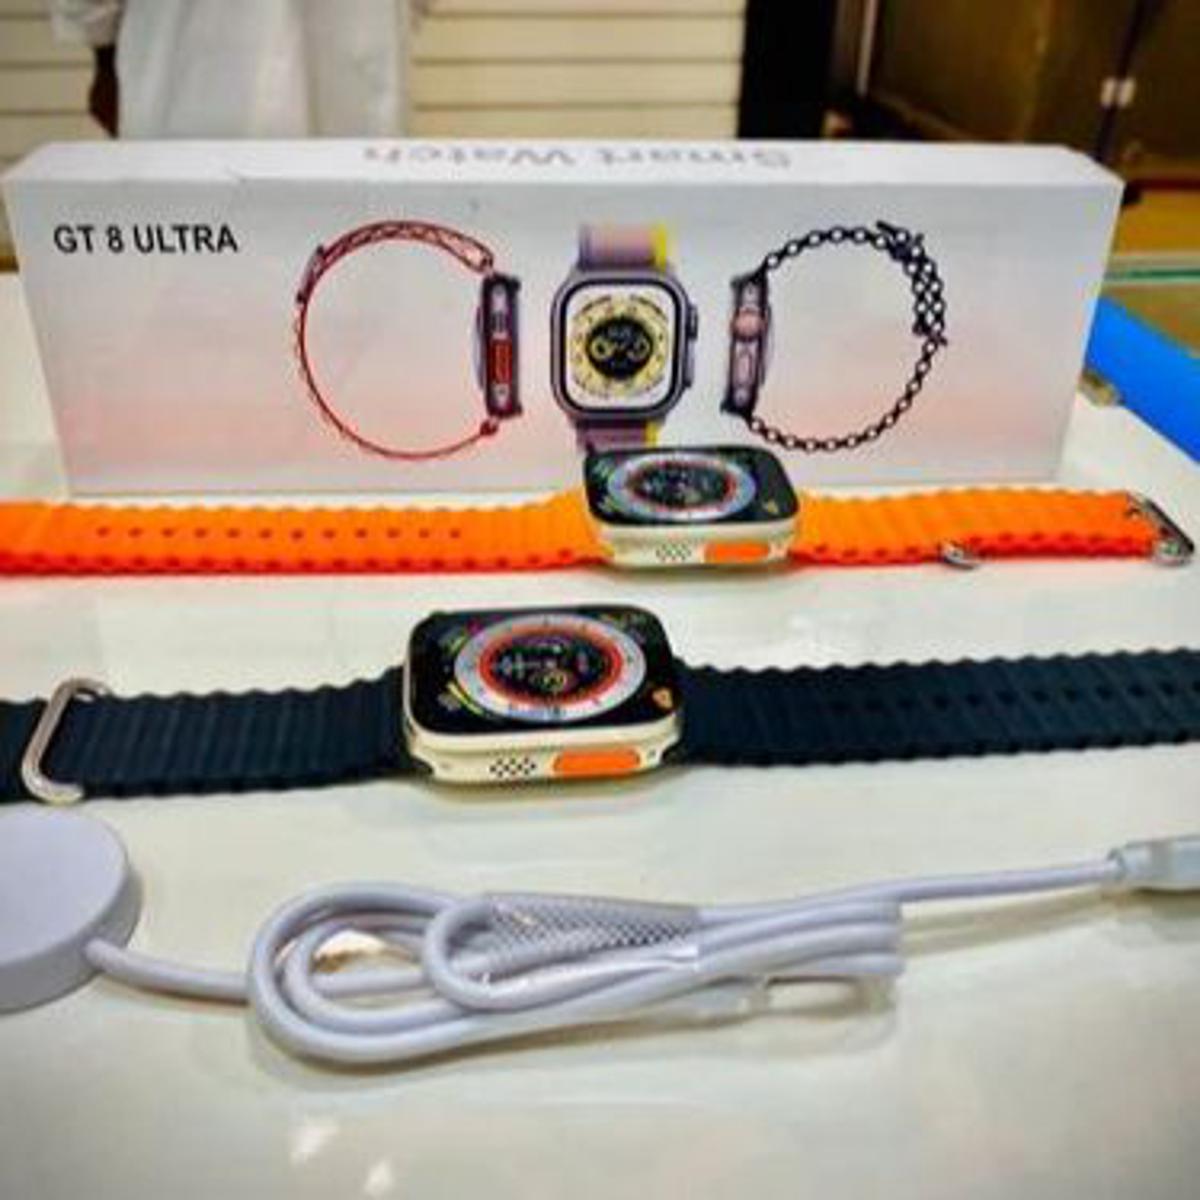 GT8 ULTRA Smart Watch-in R Gadget